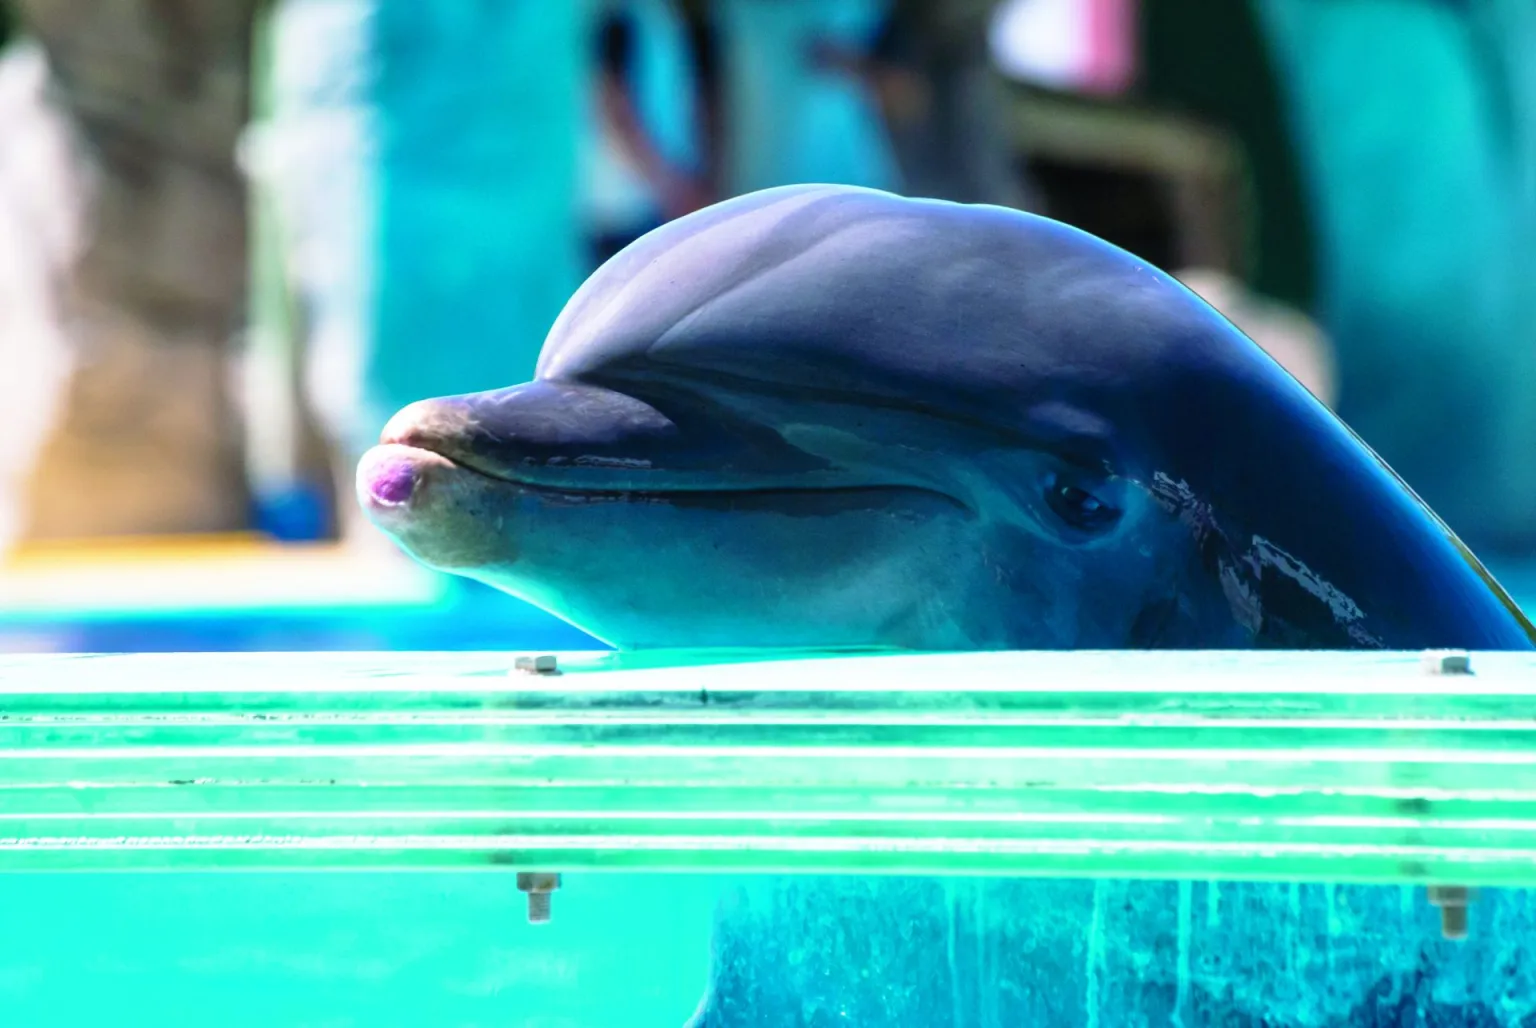 Imatge d'arxiu d'un dofí en captivitat (fotografia: Olivia Mandle, cedida a EFE).